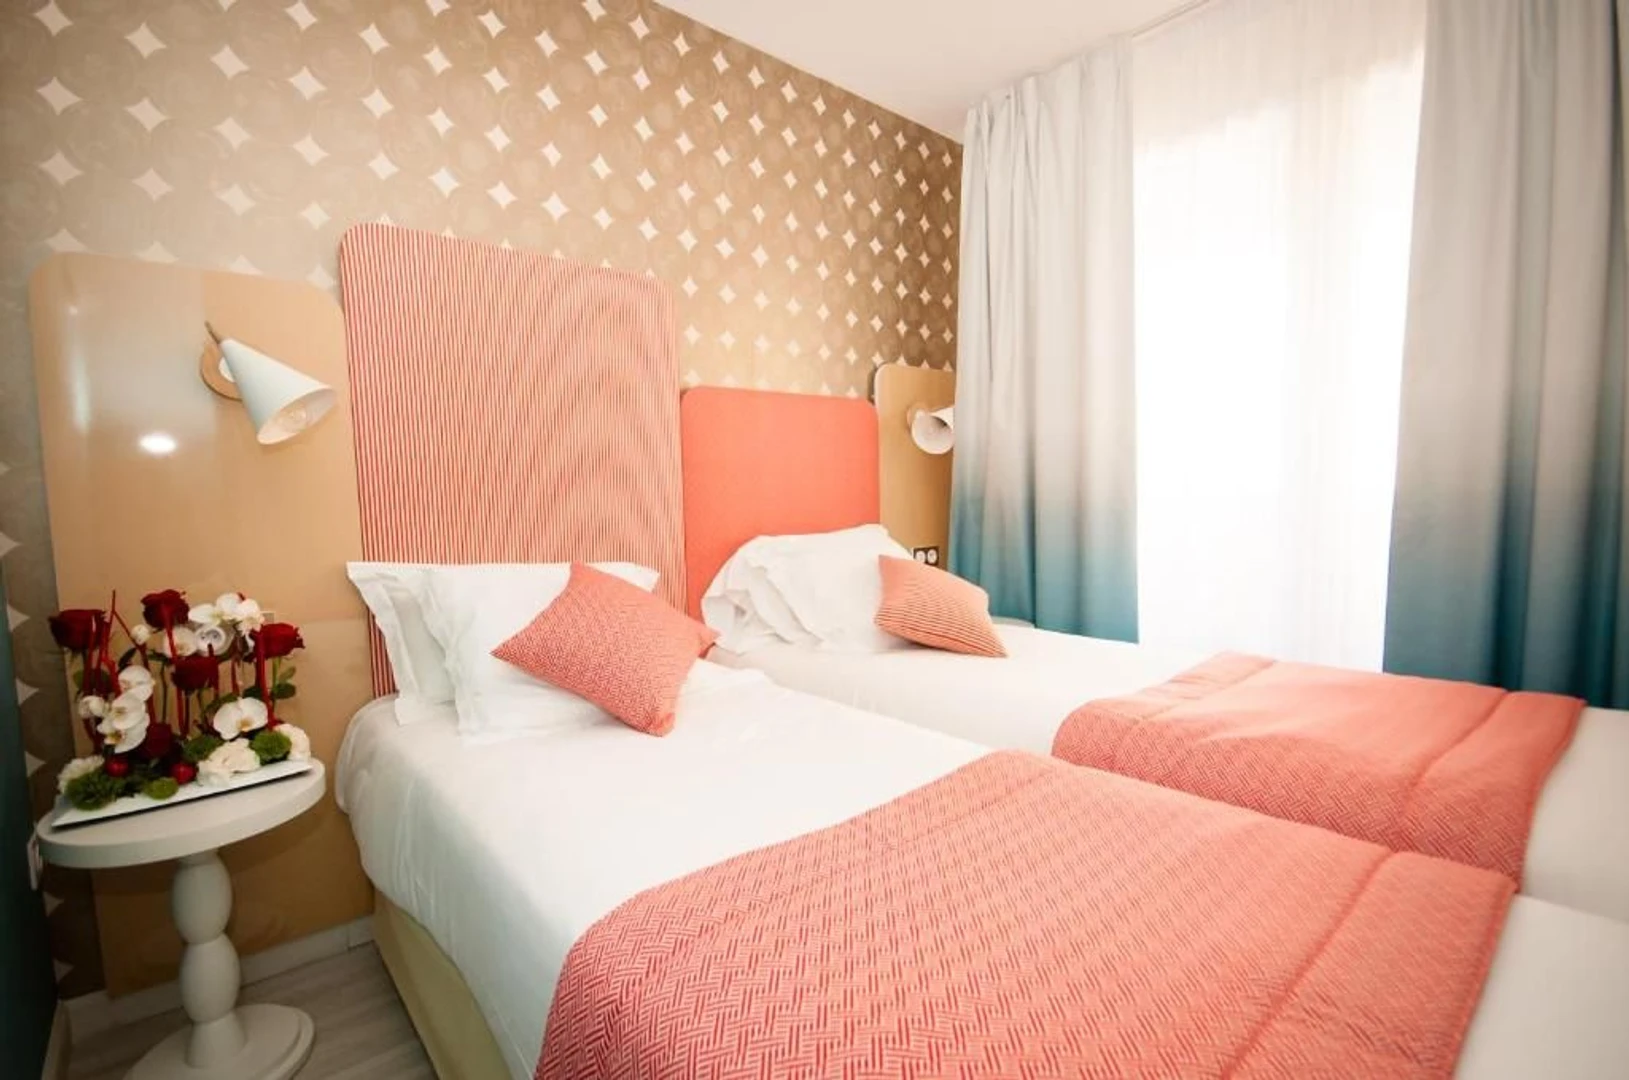 Zimmer mit Doppelbett zu vermieten Nizza